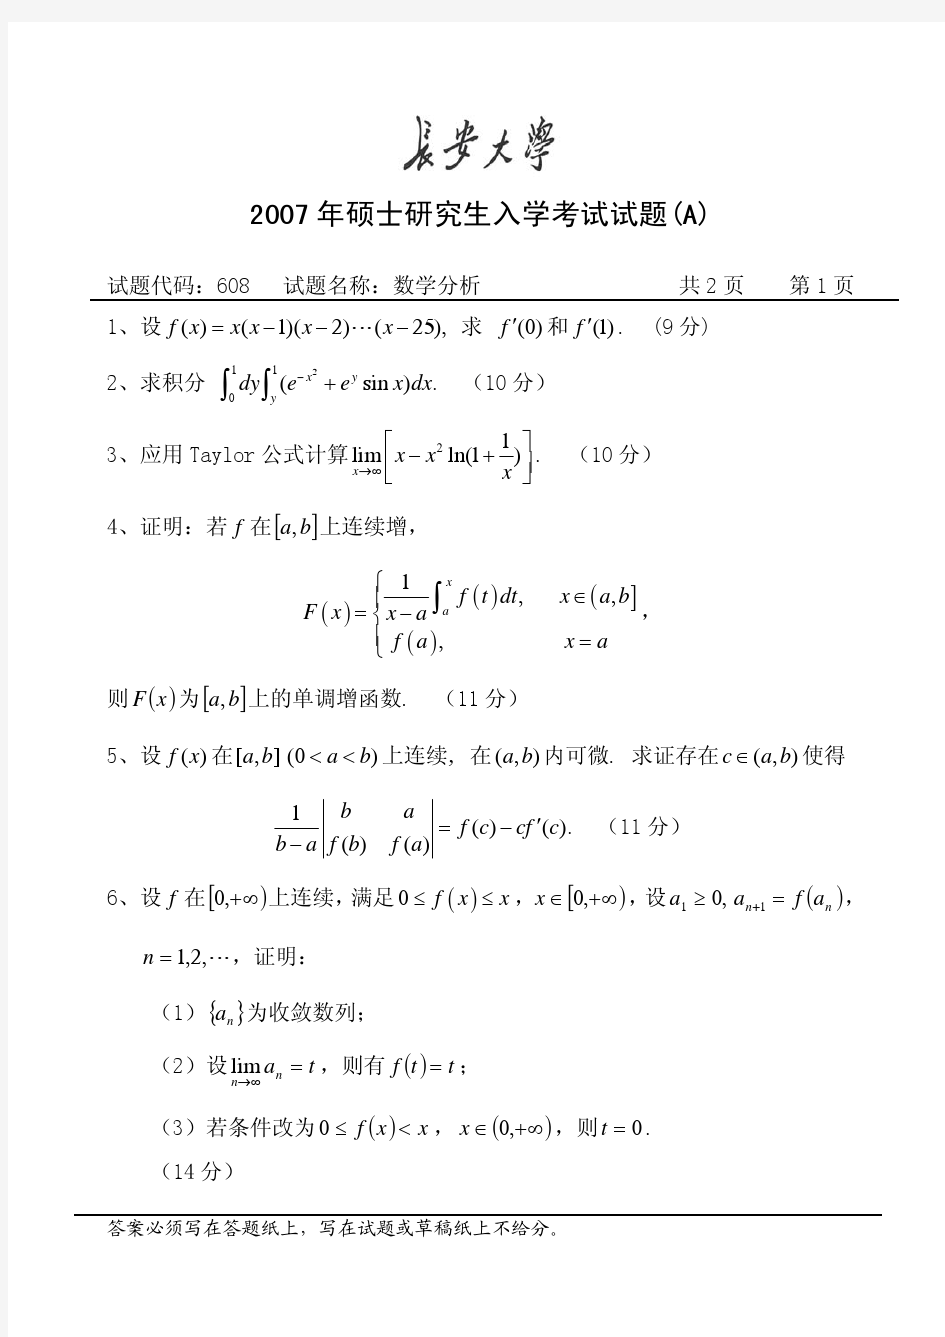 长安大学考研真题数学分析2007